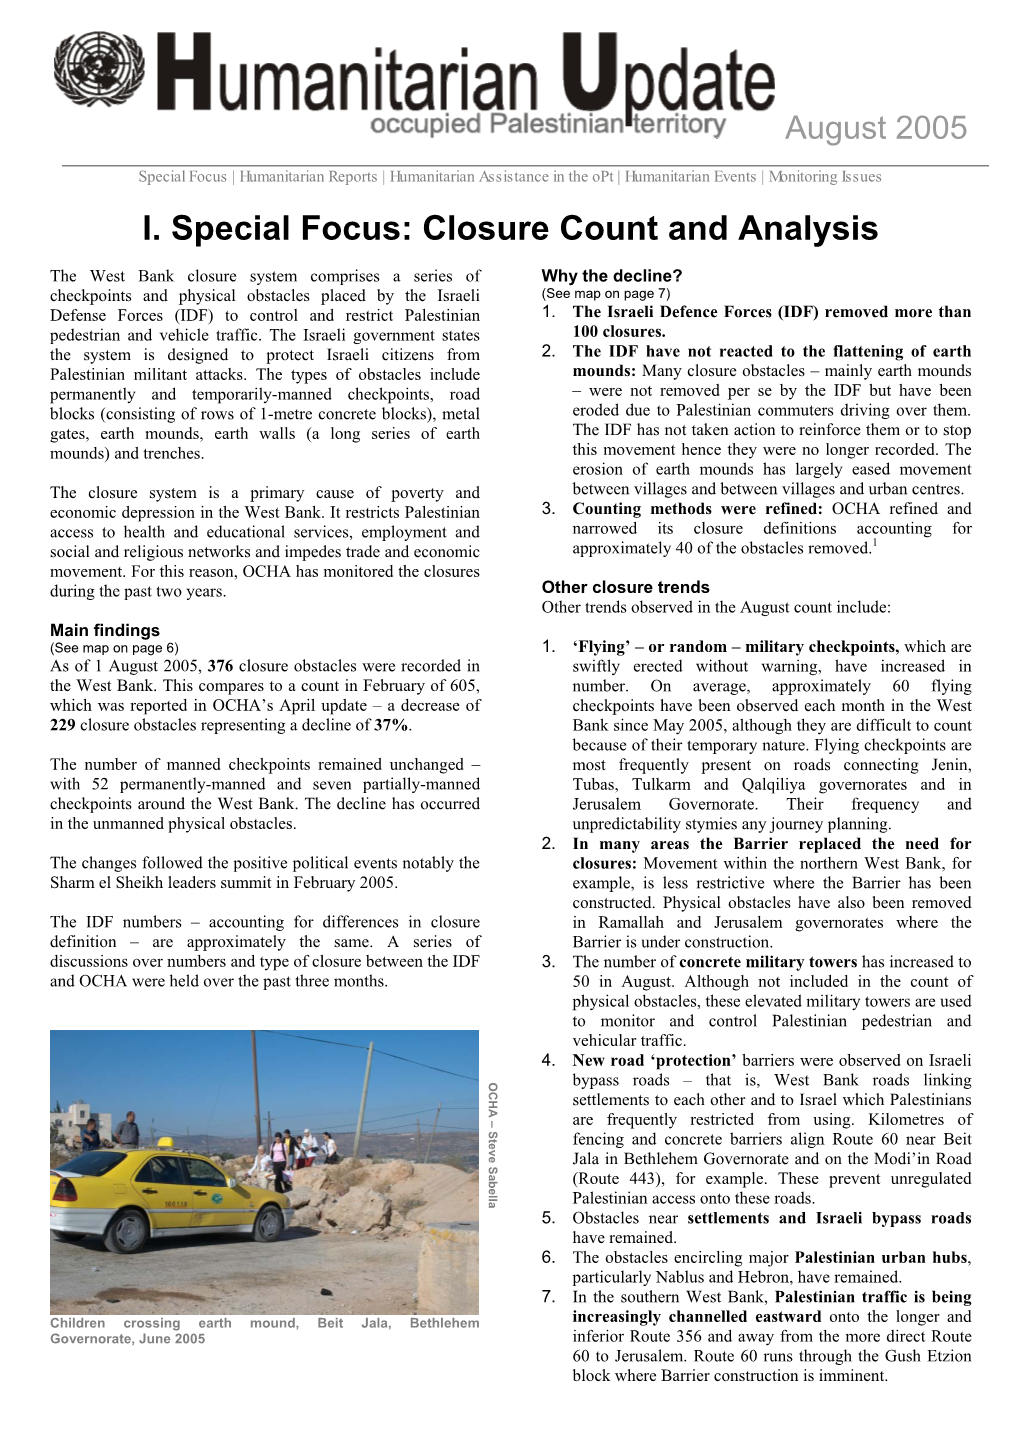 Closure Count and Analysis Focus: Closure I